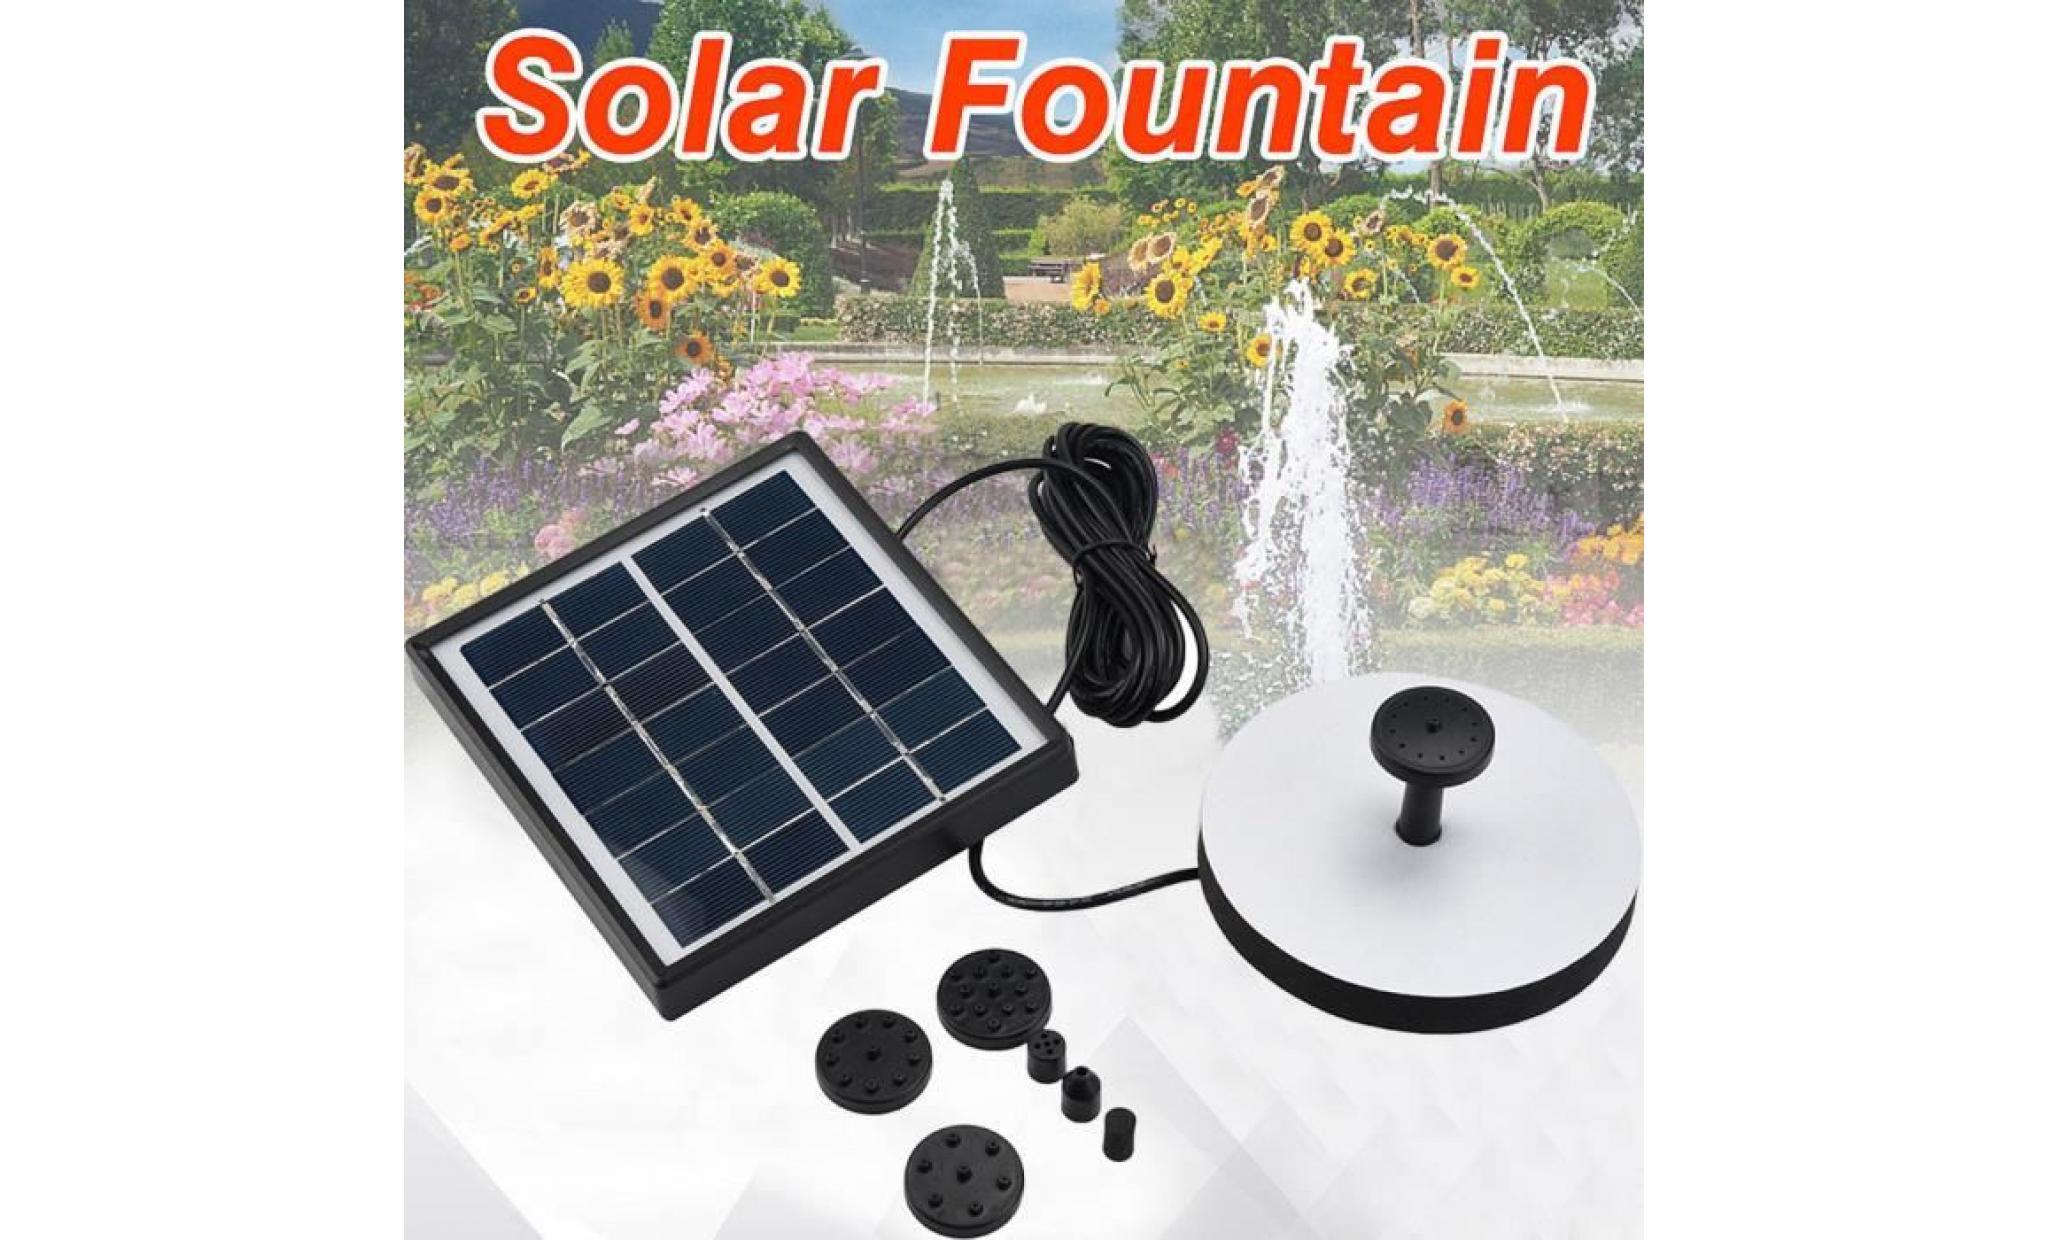 poi@ panneau solaire d'eau d'alimentation fontaine pompe kit piscine étang de jardin arrosage submersible noir_37